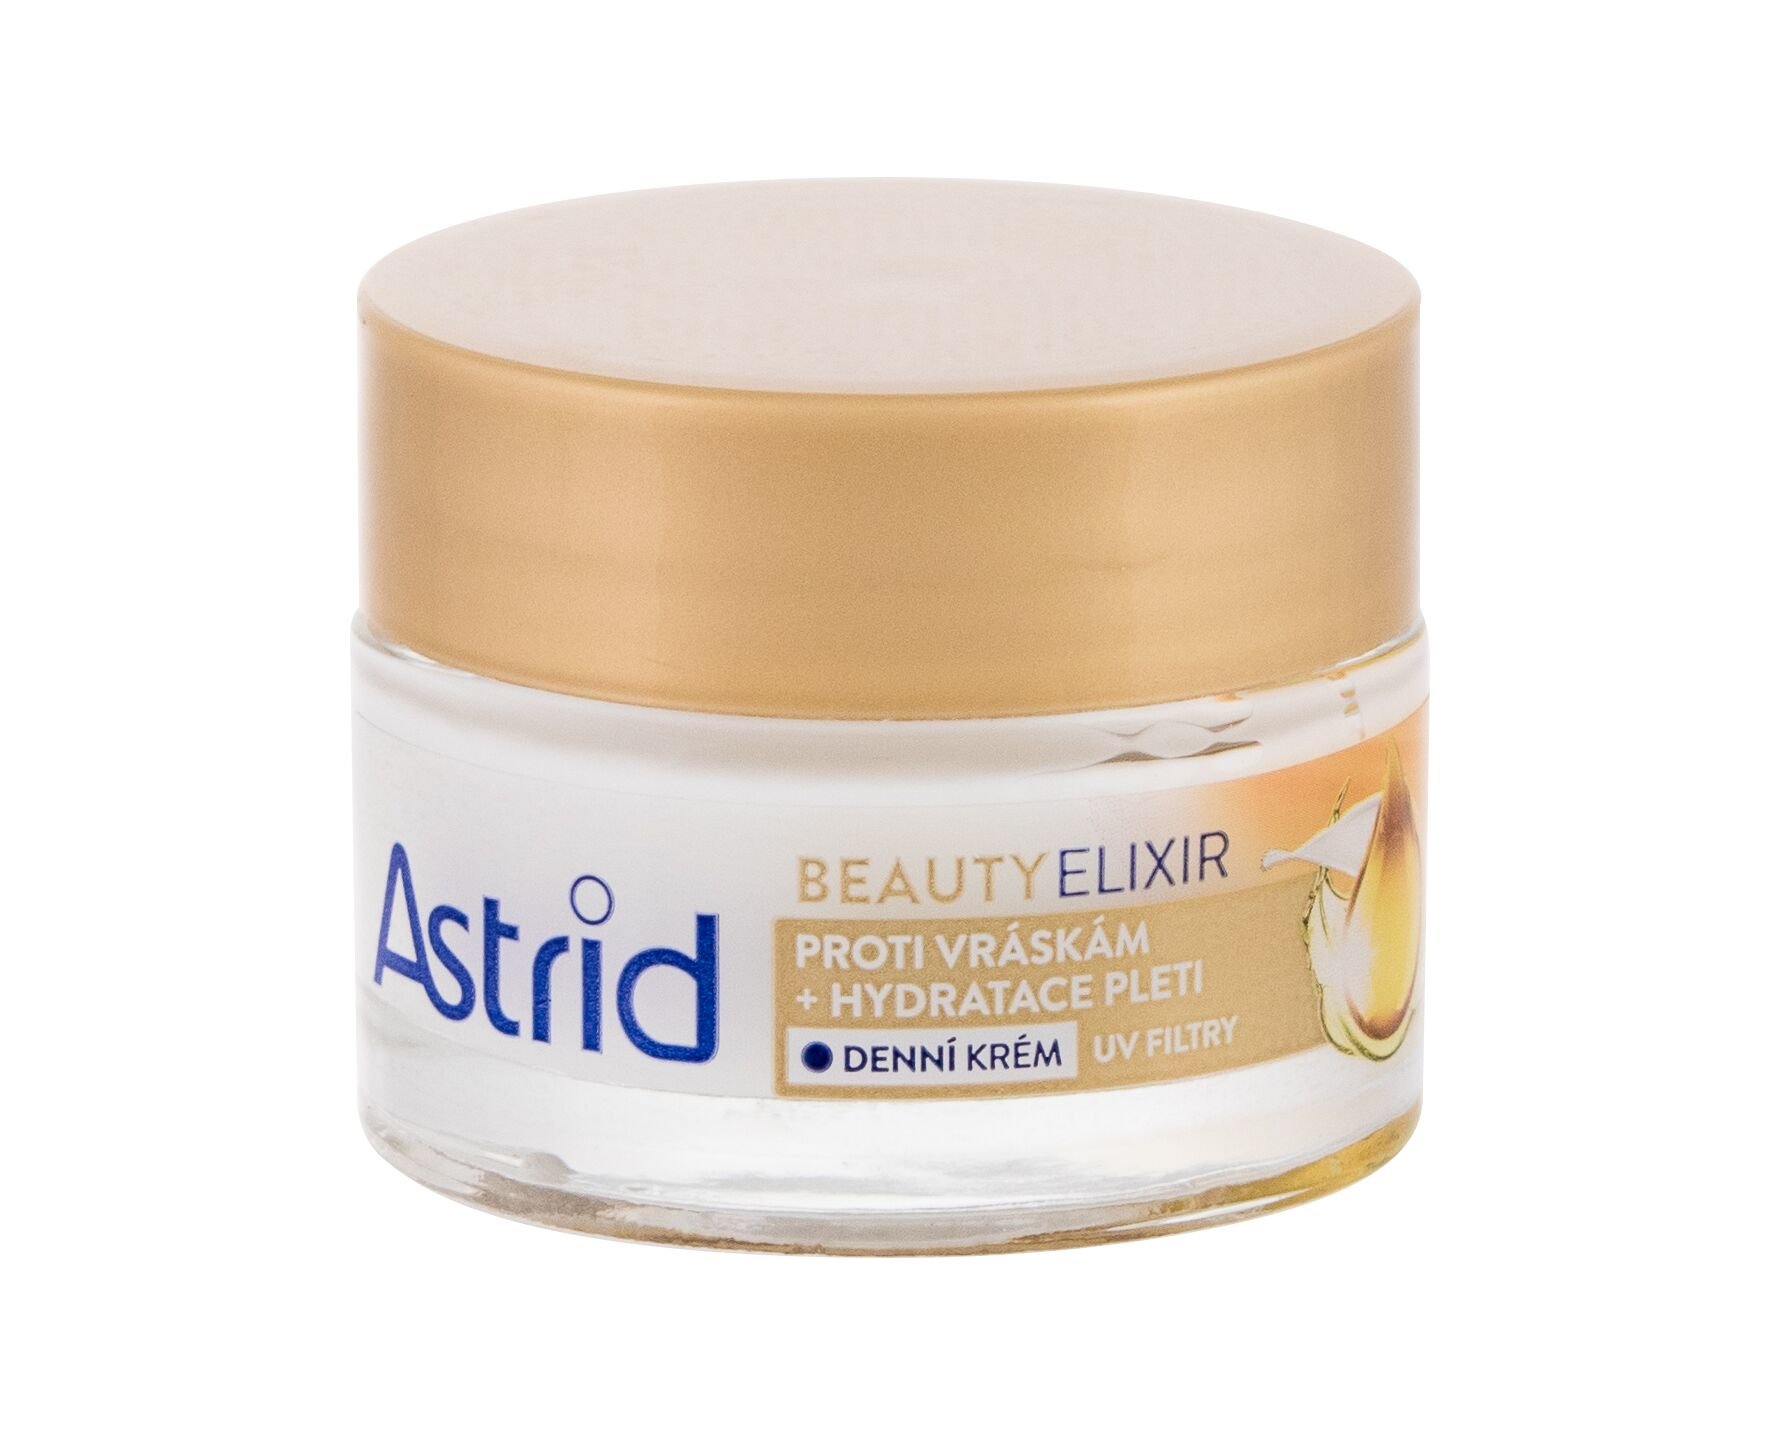 Astrid Beauty Elixir 50ml dieninis kremas